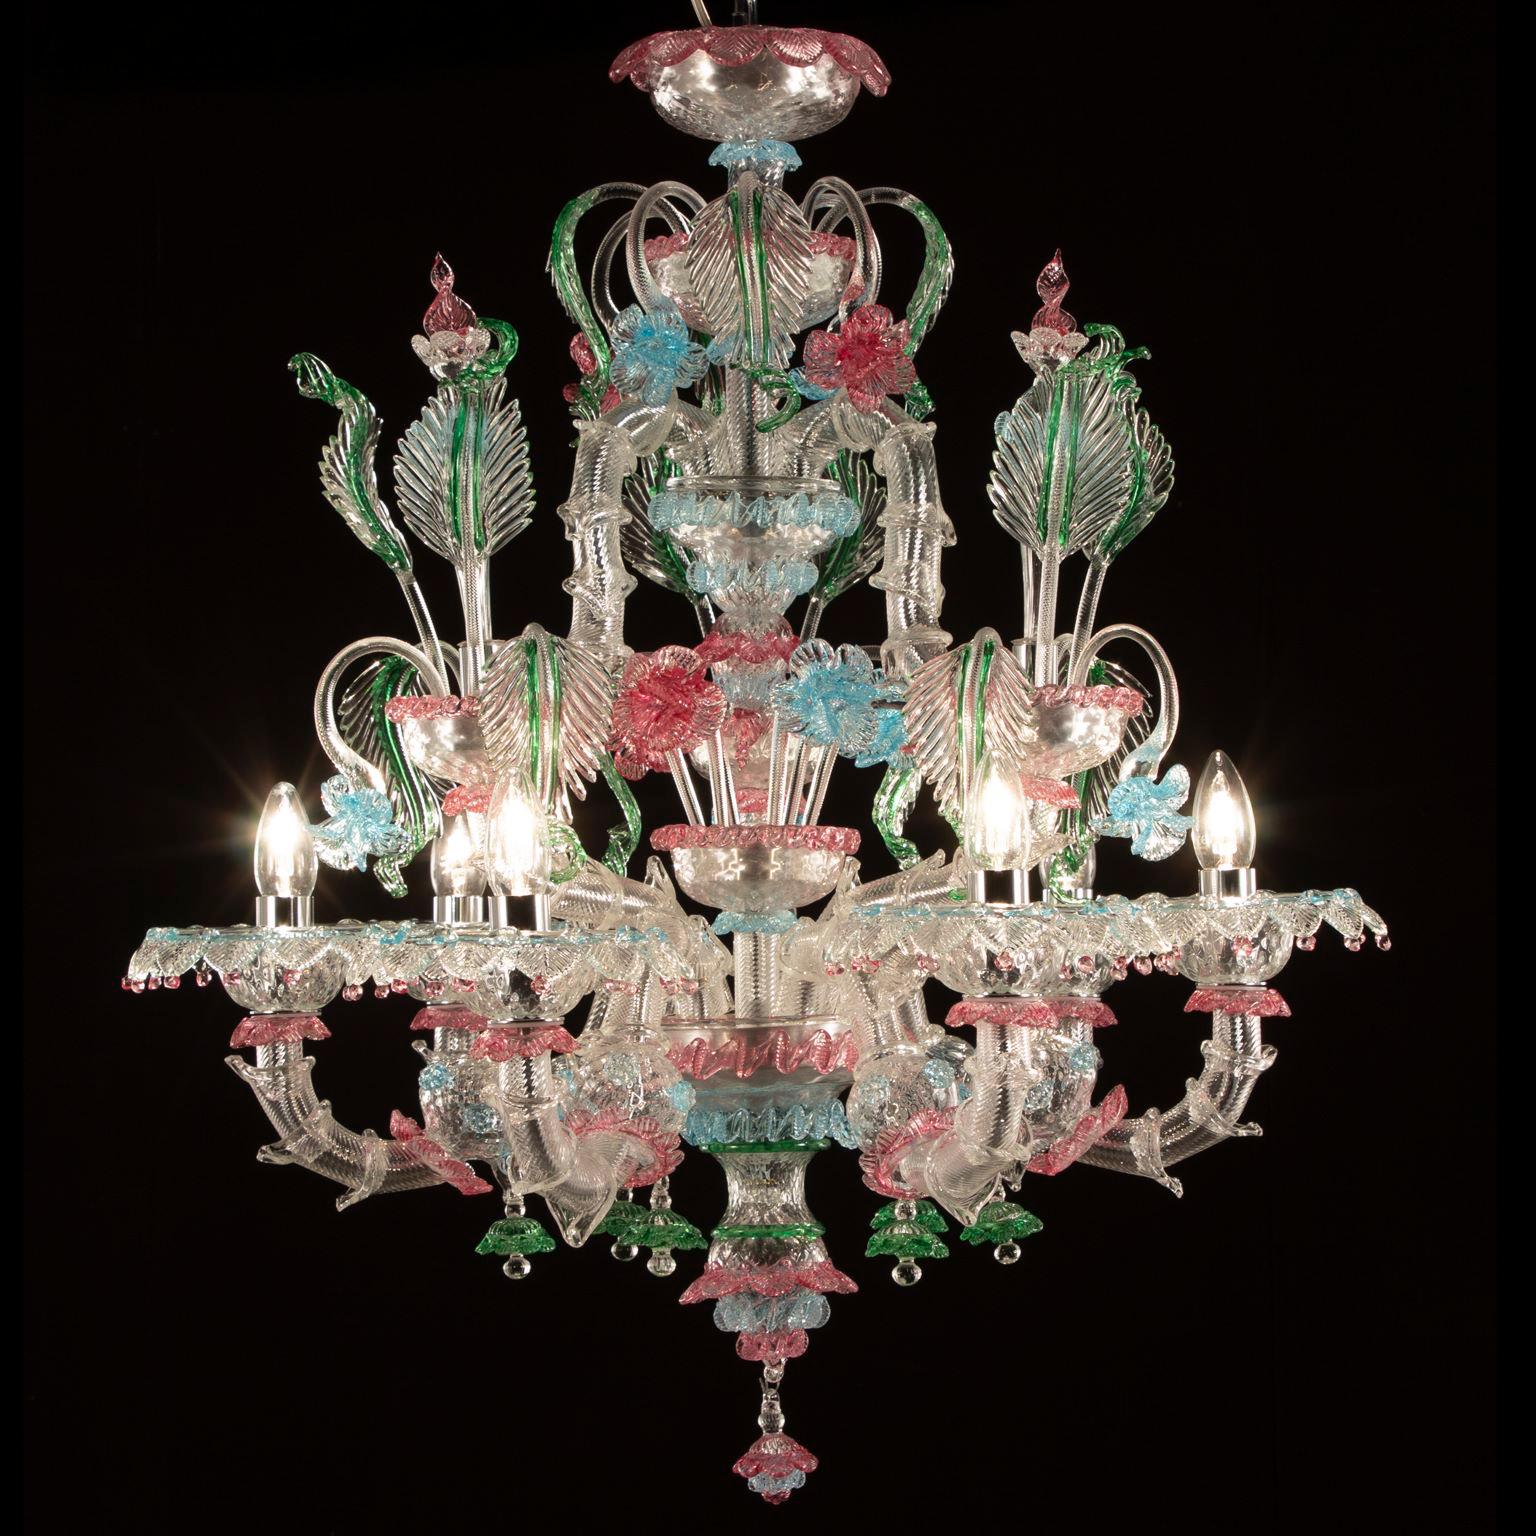 Ce lustre rezzonico 6 lumières en verre de Murano transparent avec des détails colorés par Multiforme est entièrement fait à la main.
C'est la combinaison de la structure traditionnelle vénitienne avec des couleurs criardes. Un éclairage particulier